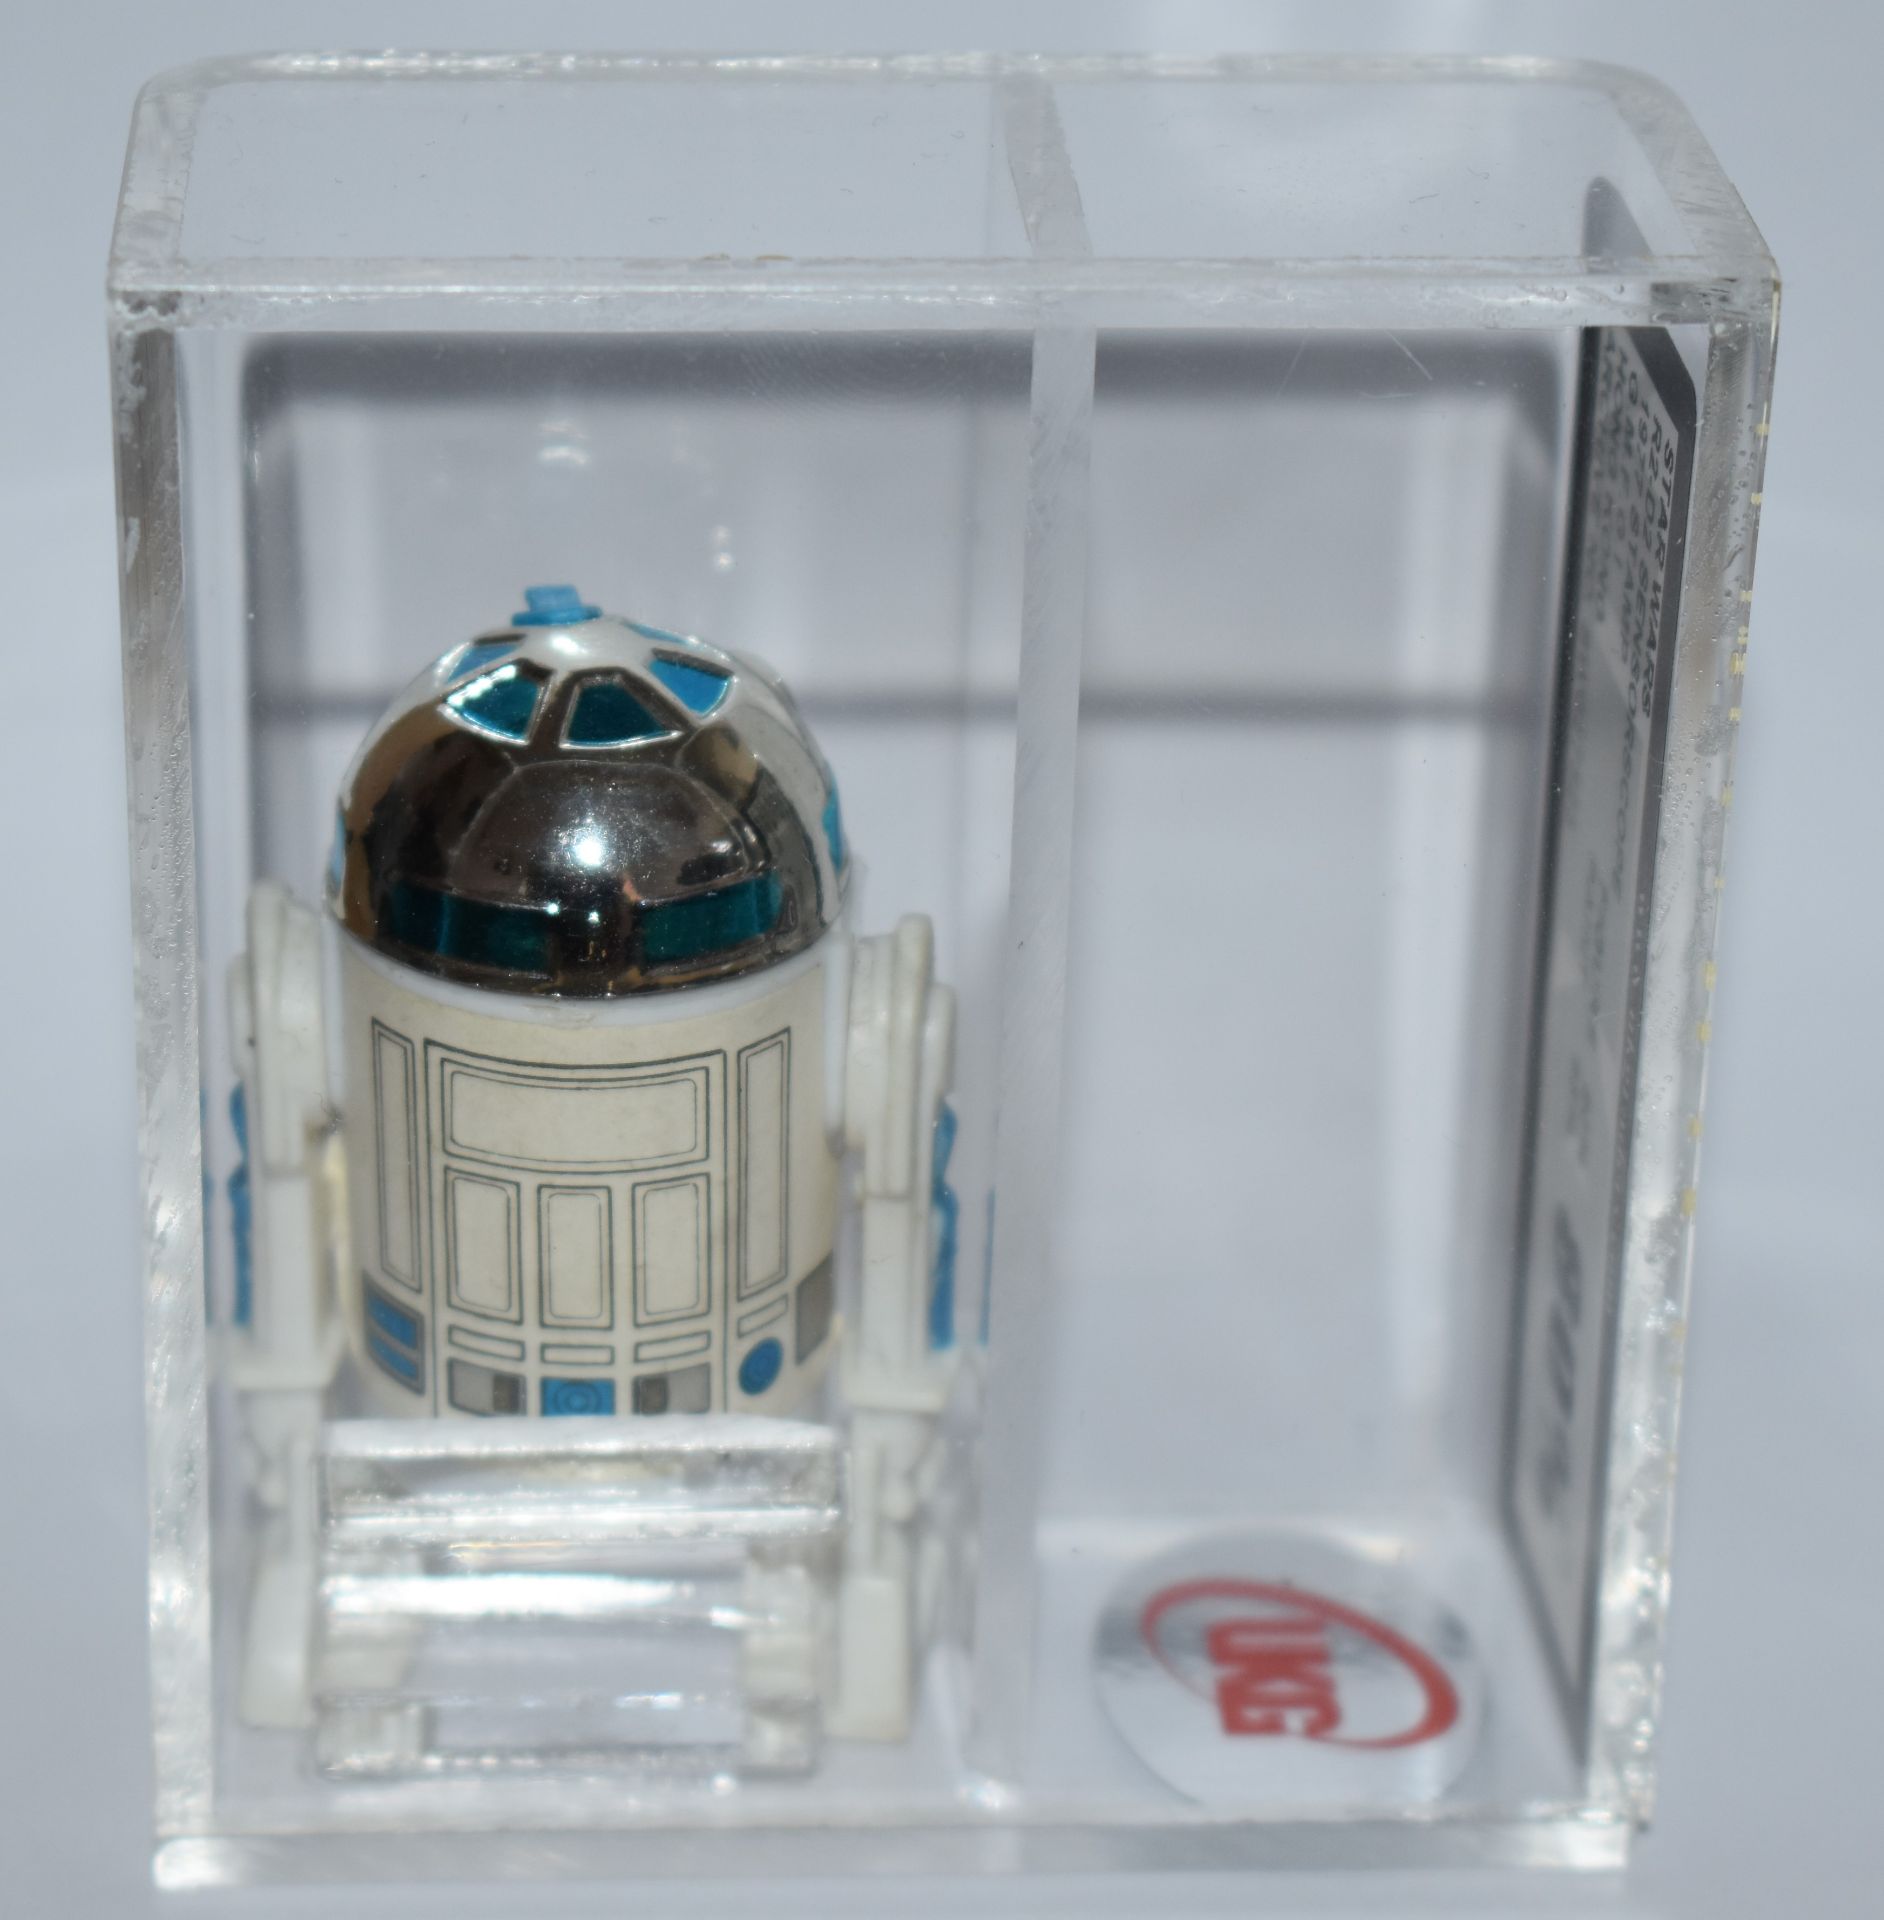 1 x Vintage Star Wars R2-D2 Sensorscope Action Figure 1977 - Graded by UKG Toy Graders - NO VAT! - Image 2 of 3